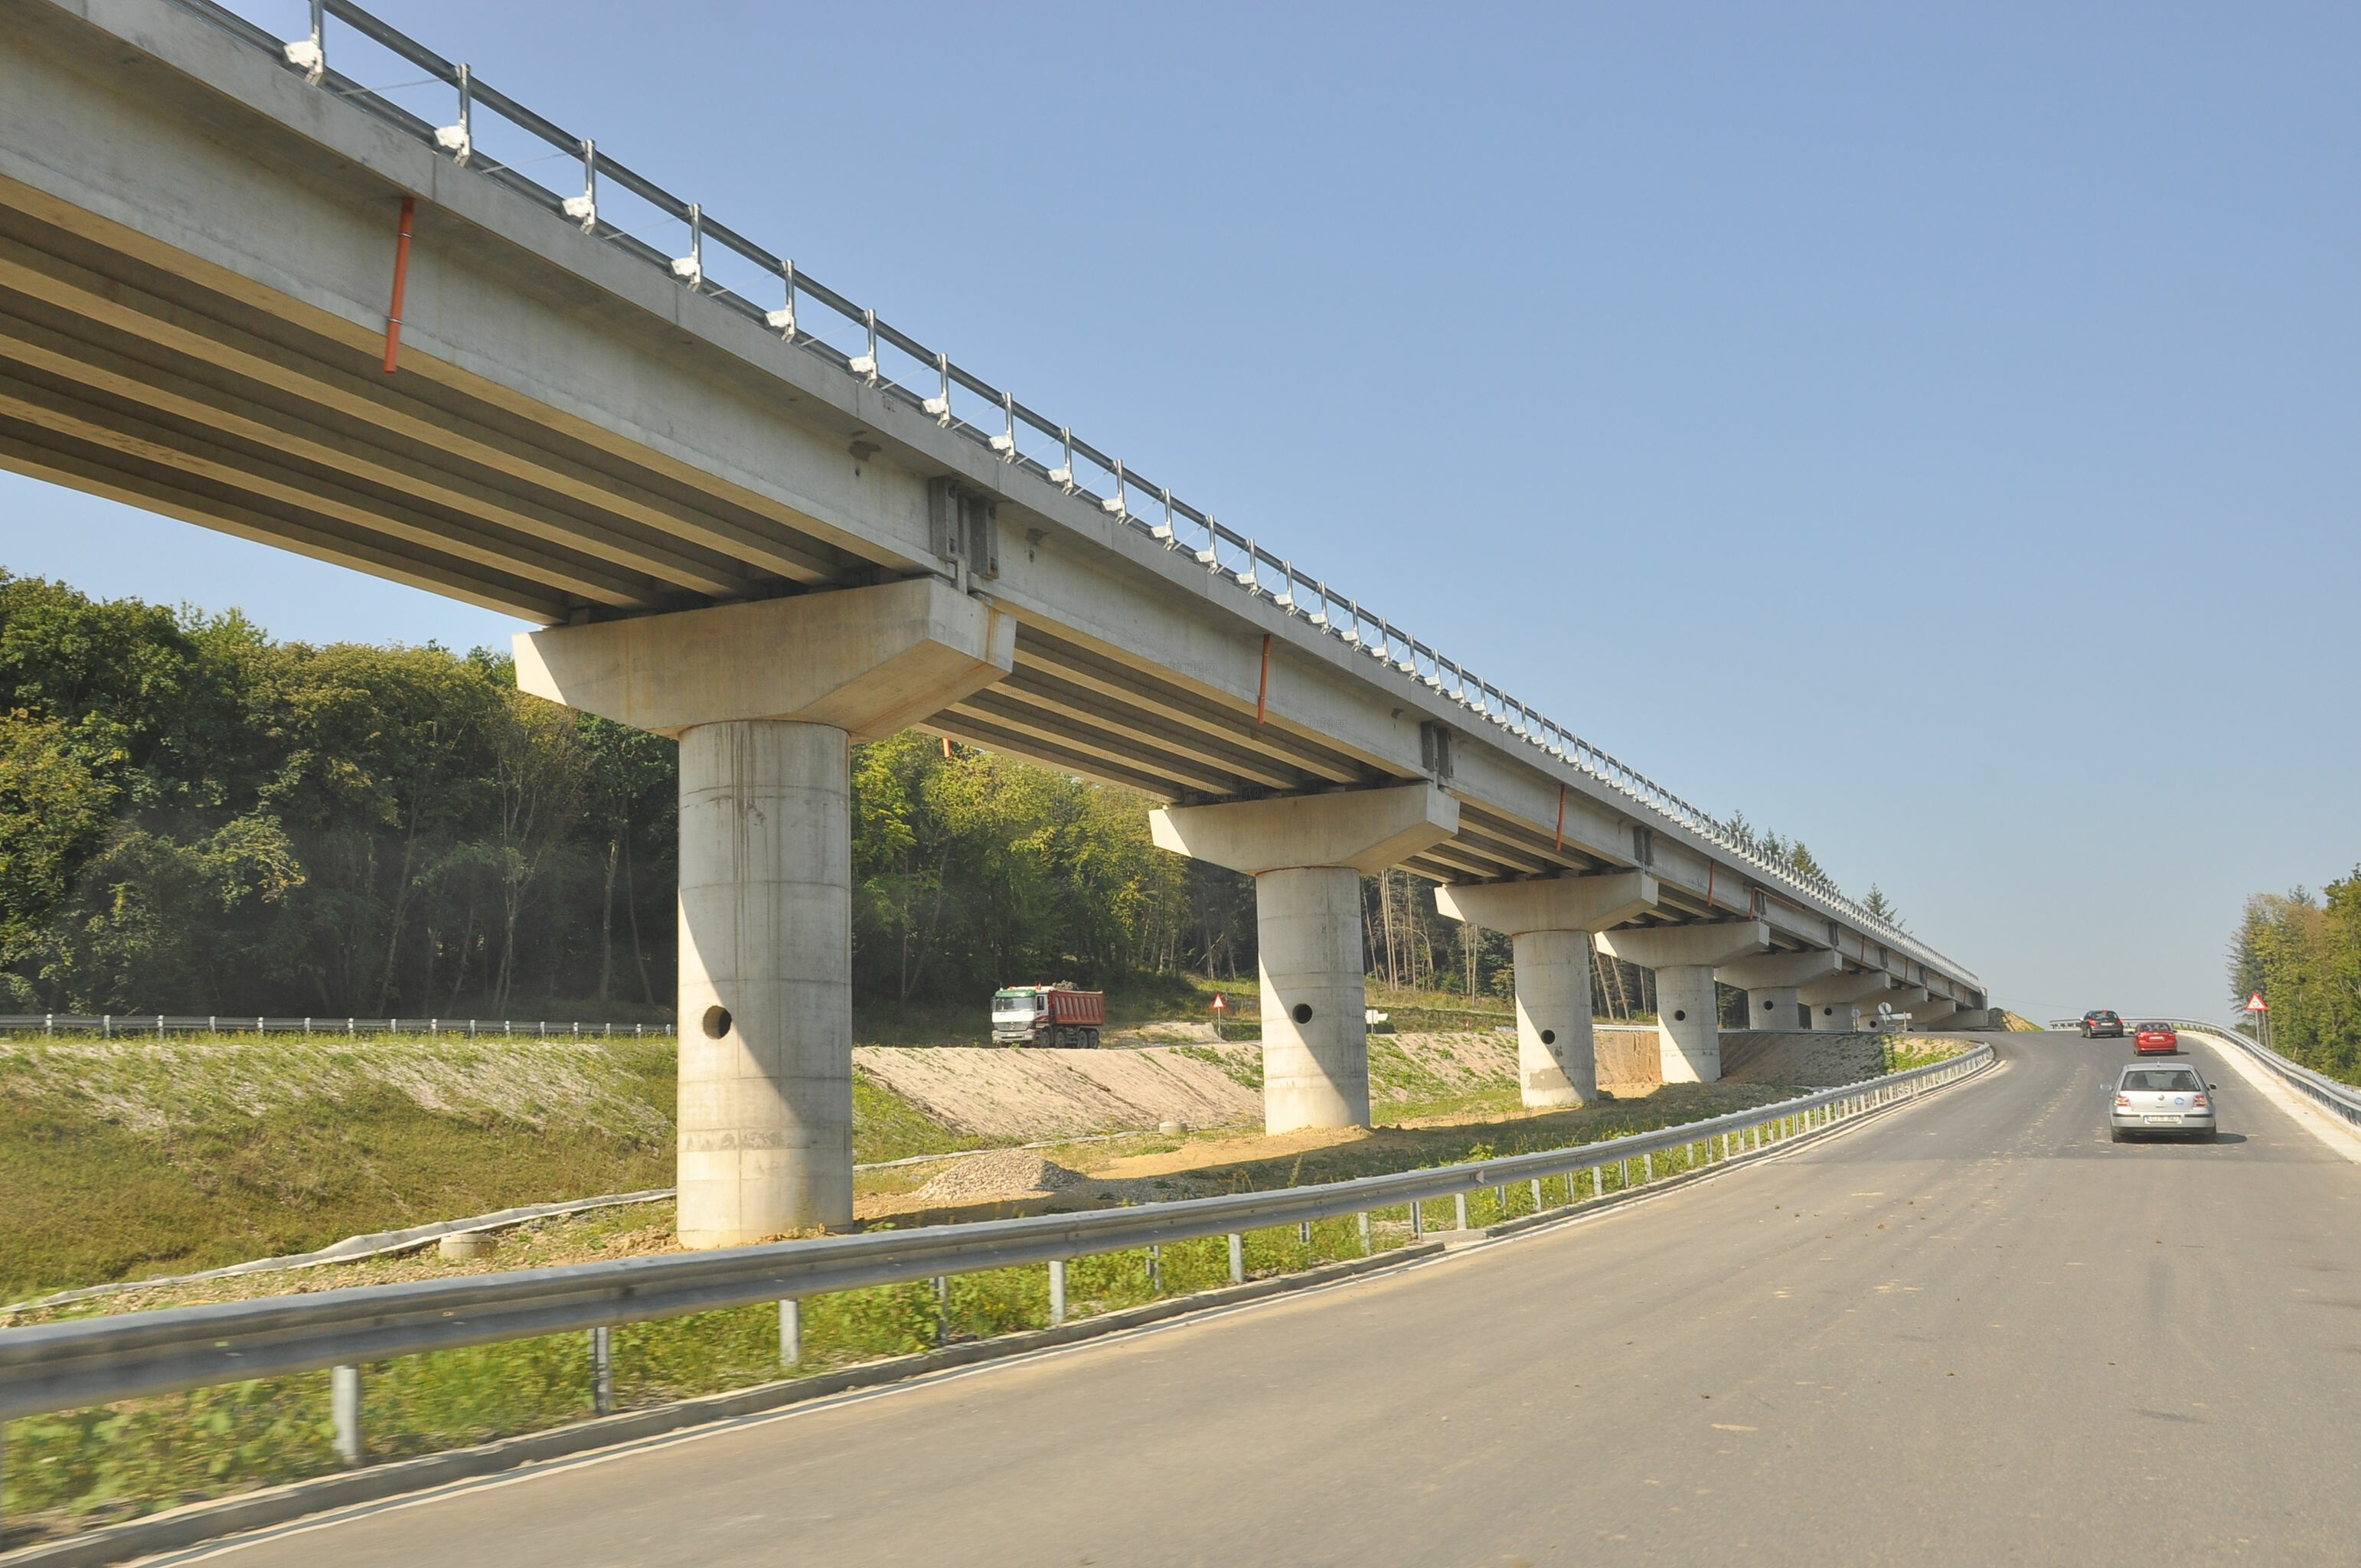 Clujenii vor putea merge pe Centura Vâlcele-Apahida până pe Autostrada Transilvania, după realizarea drumului expres. FOTO: monitorulcj.ro